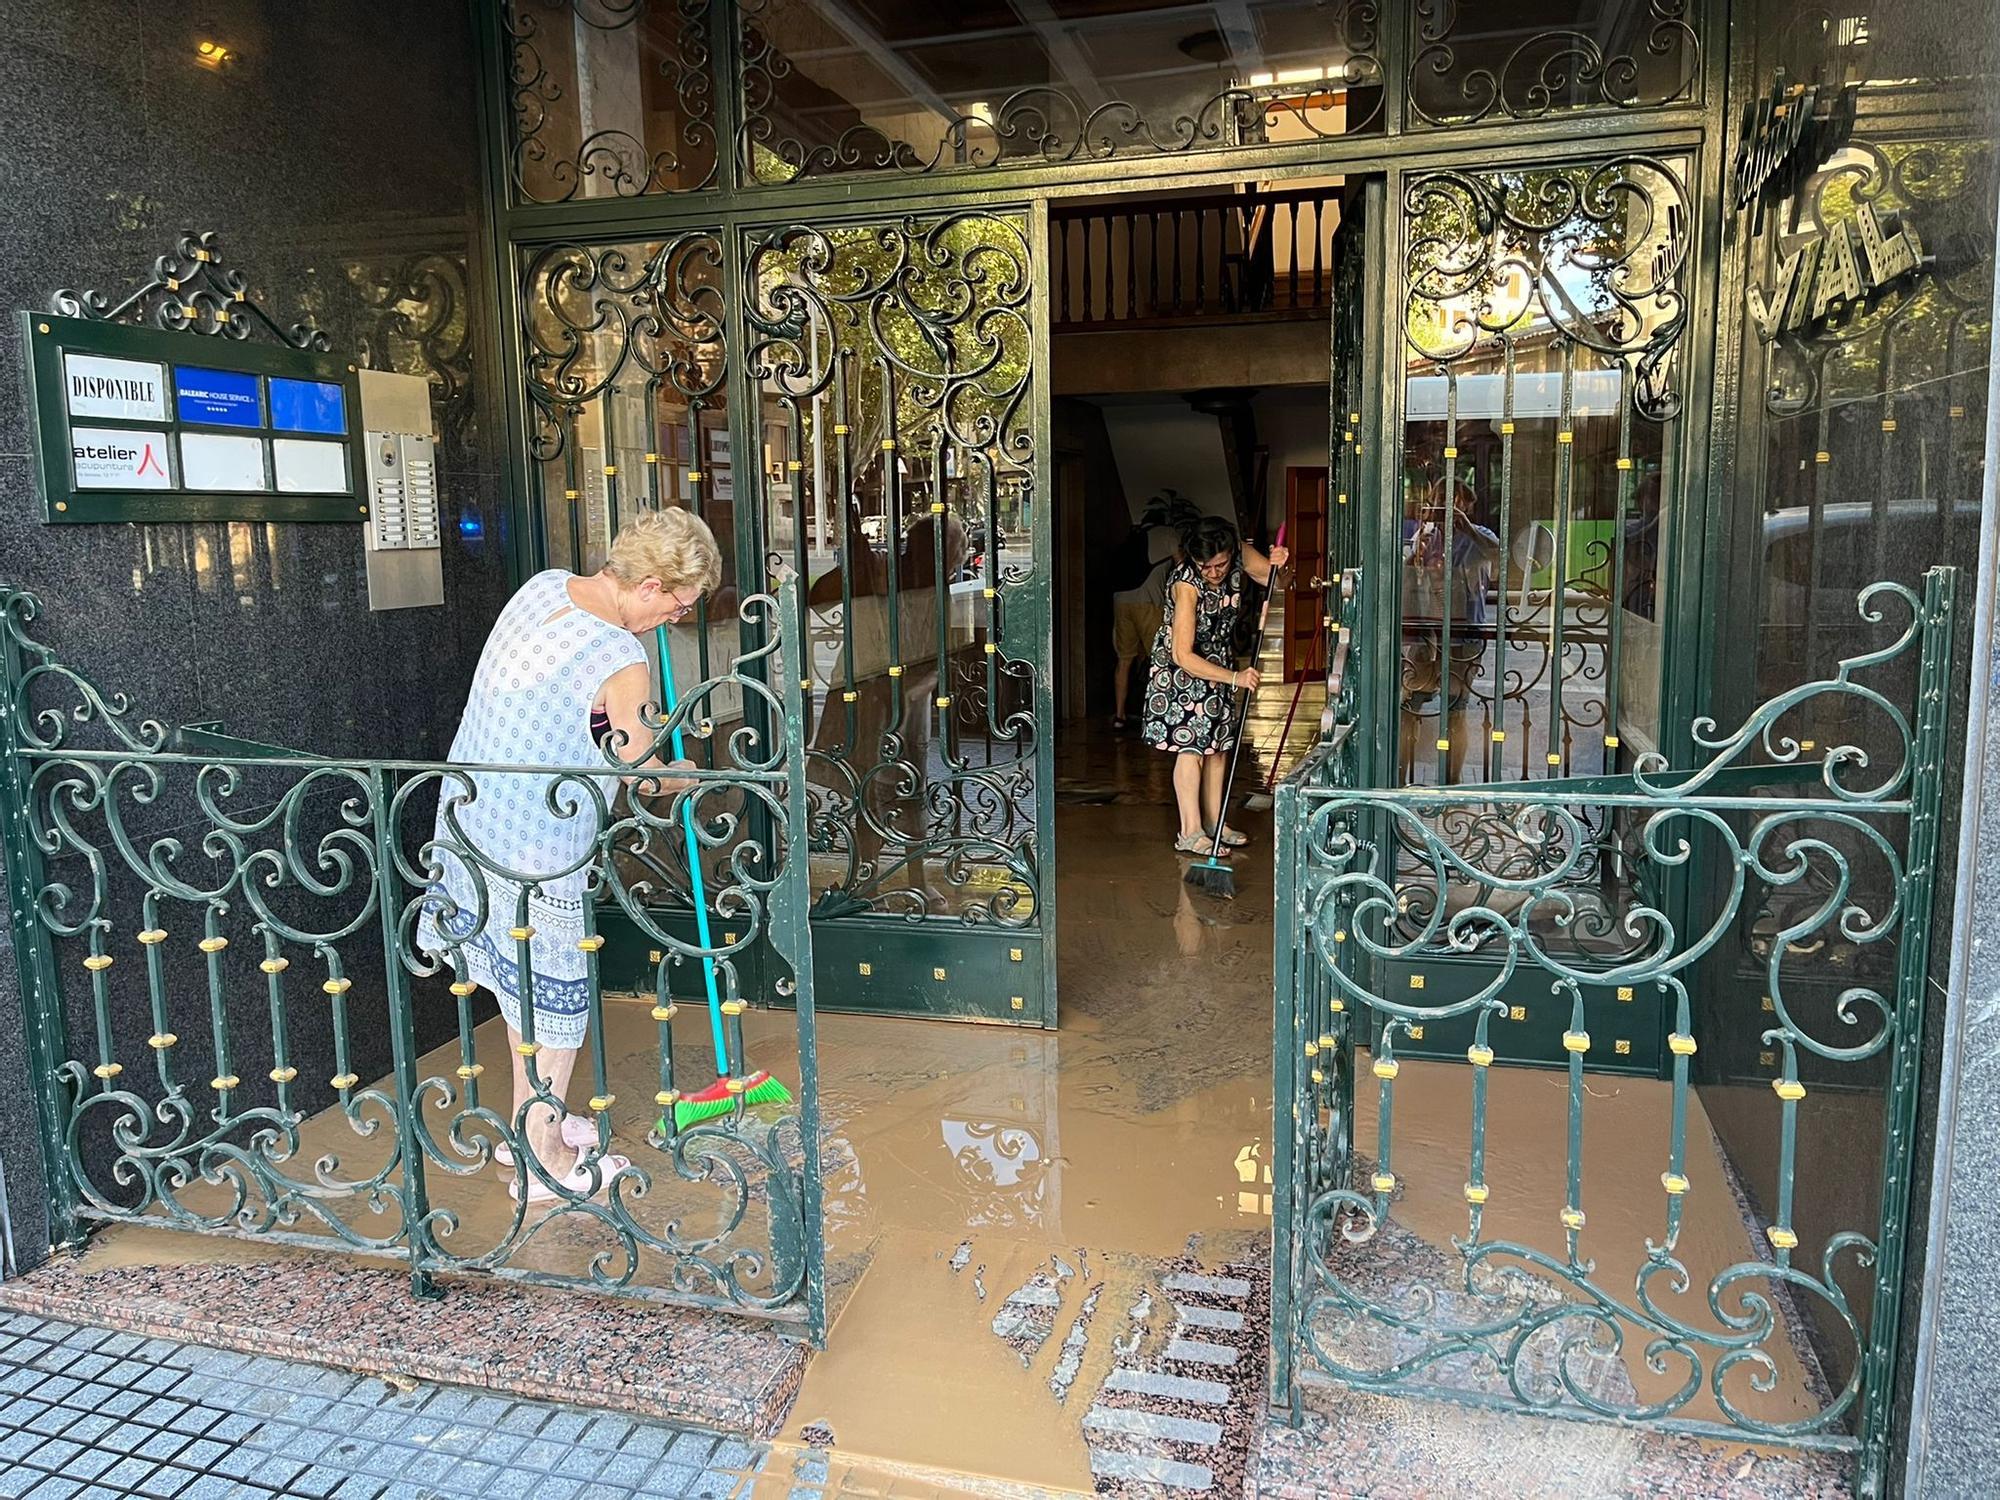 La rotura de una tubería provoca inundaciones en Palma